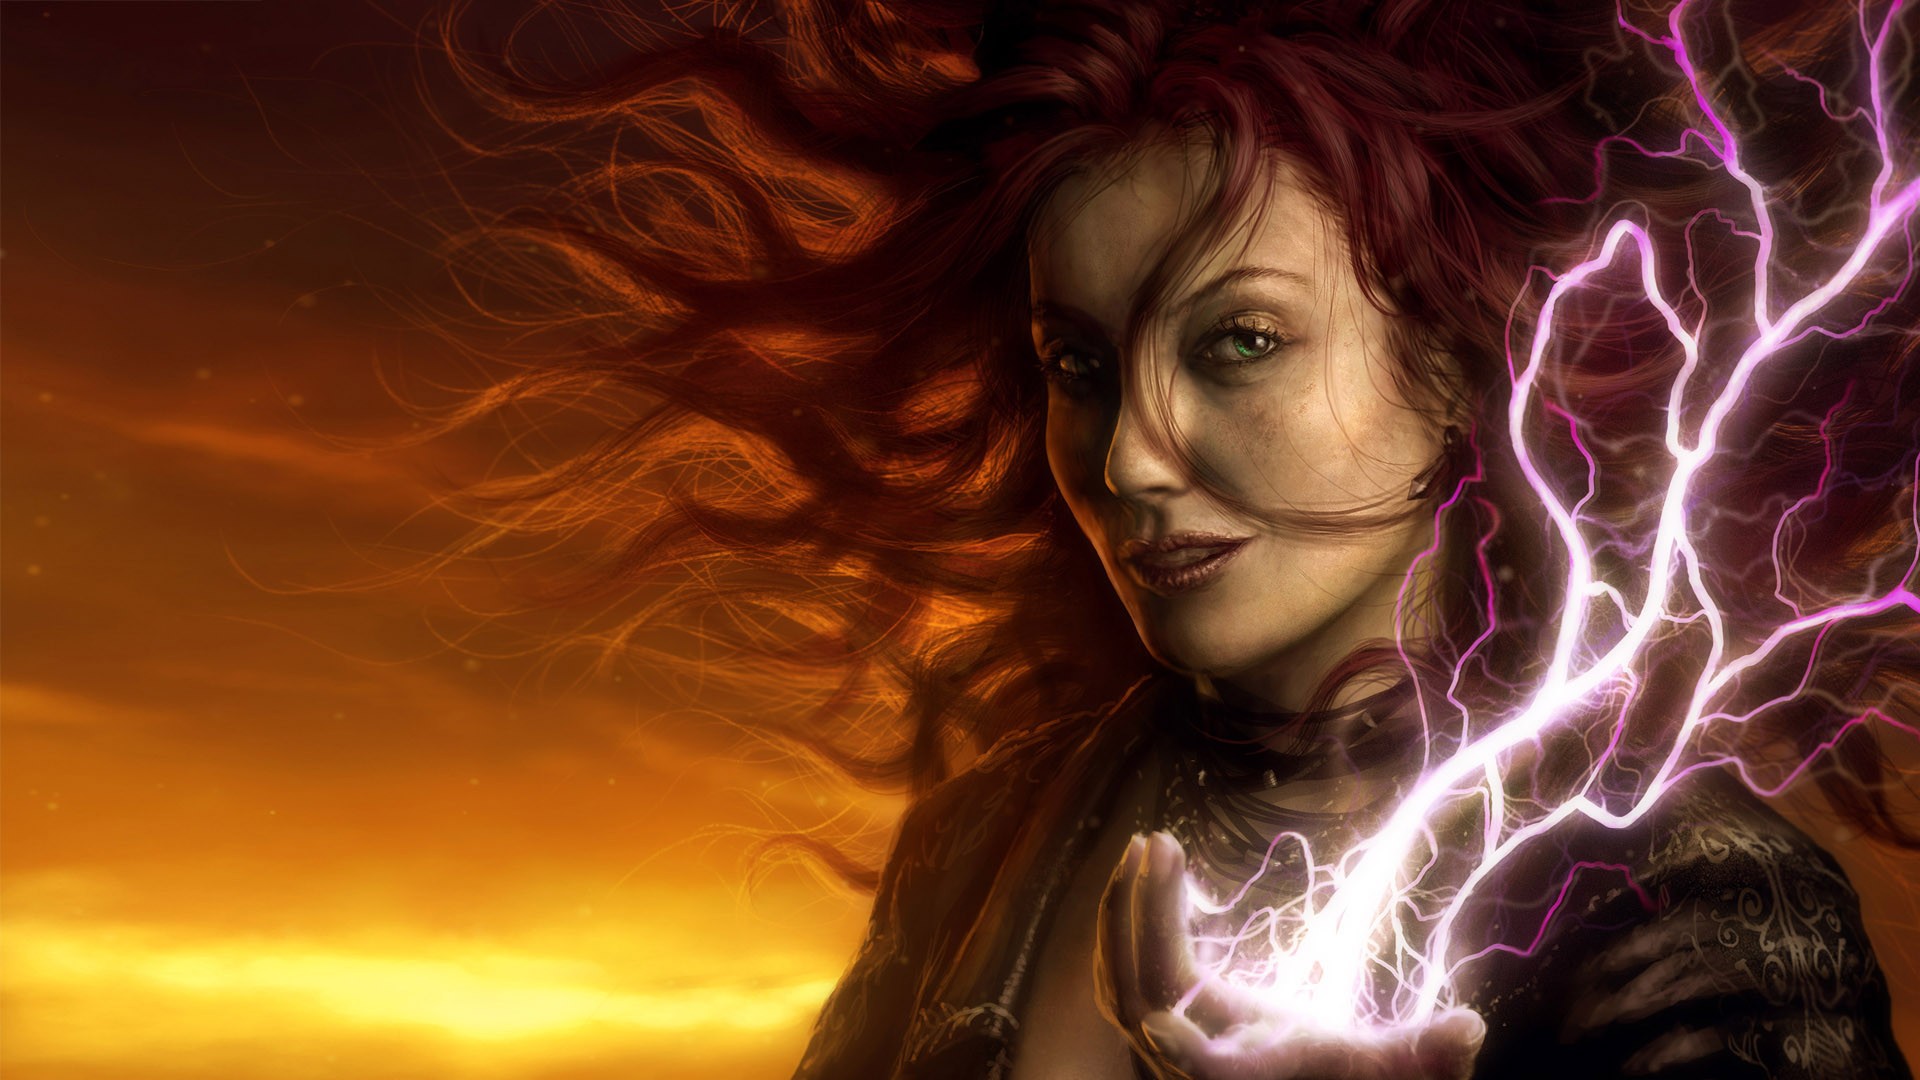 fantasy art, lightning - desktop wallpaper